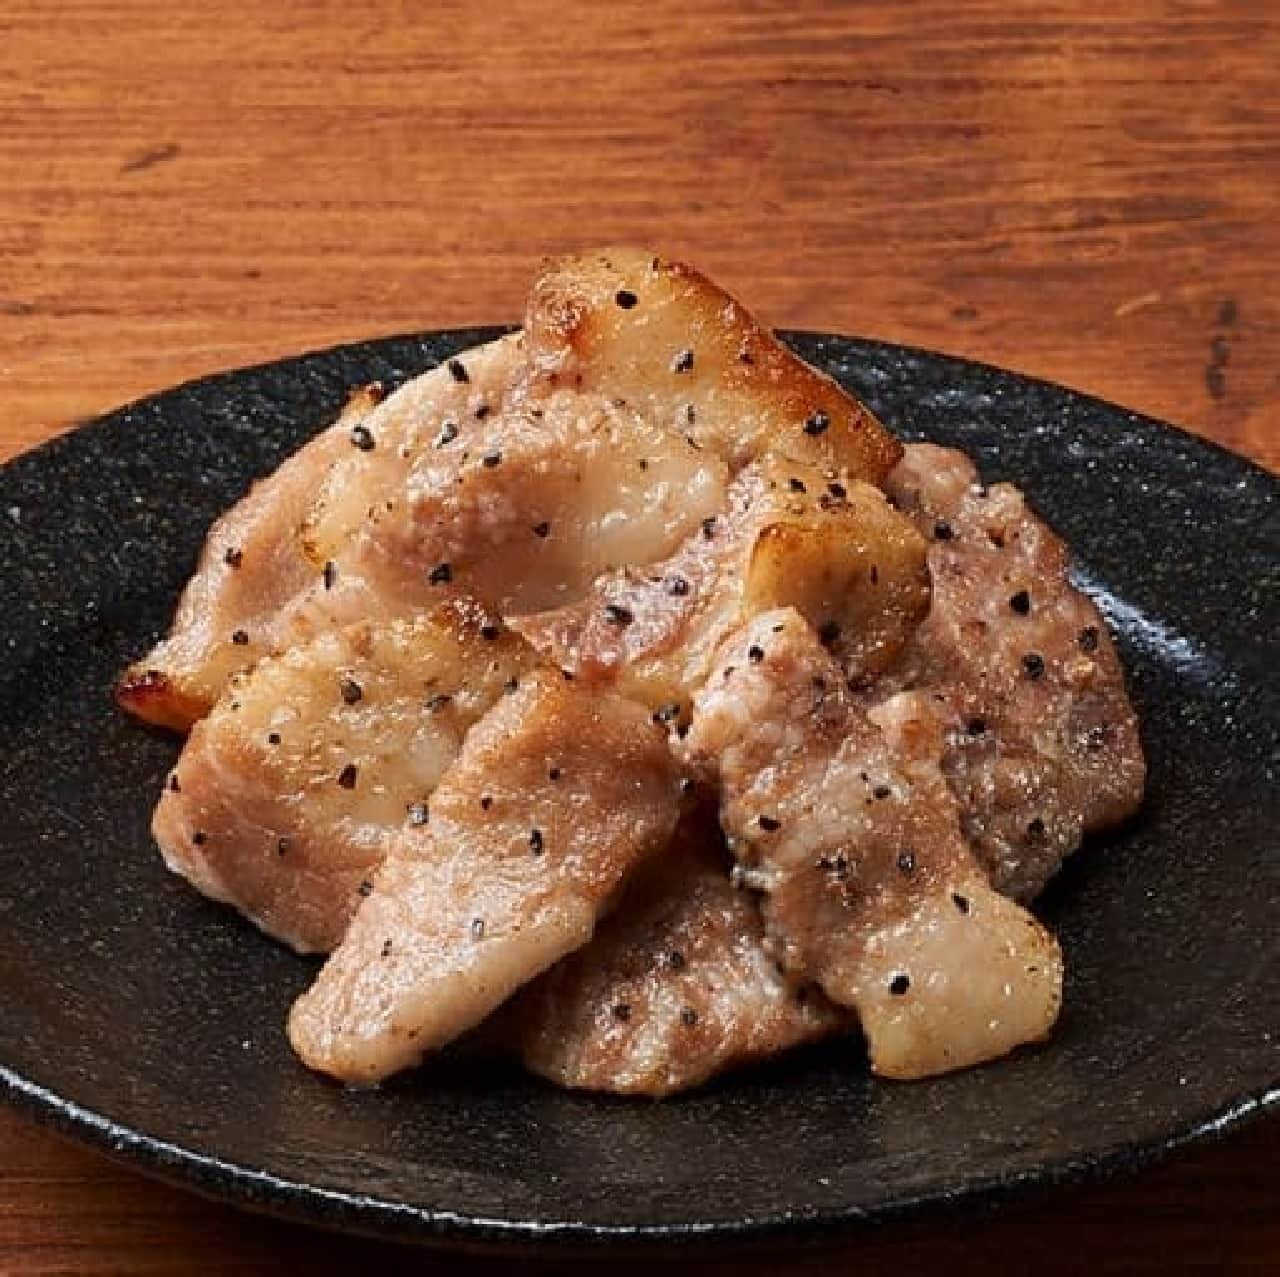 FamilyMart "Pork Toro Koku Salt Grilled"